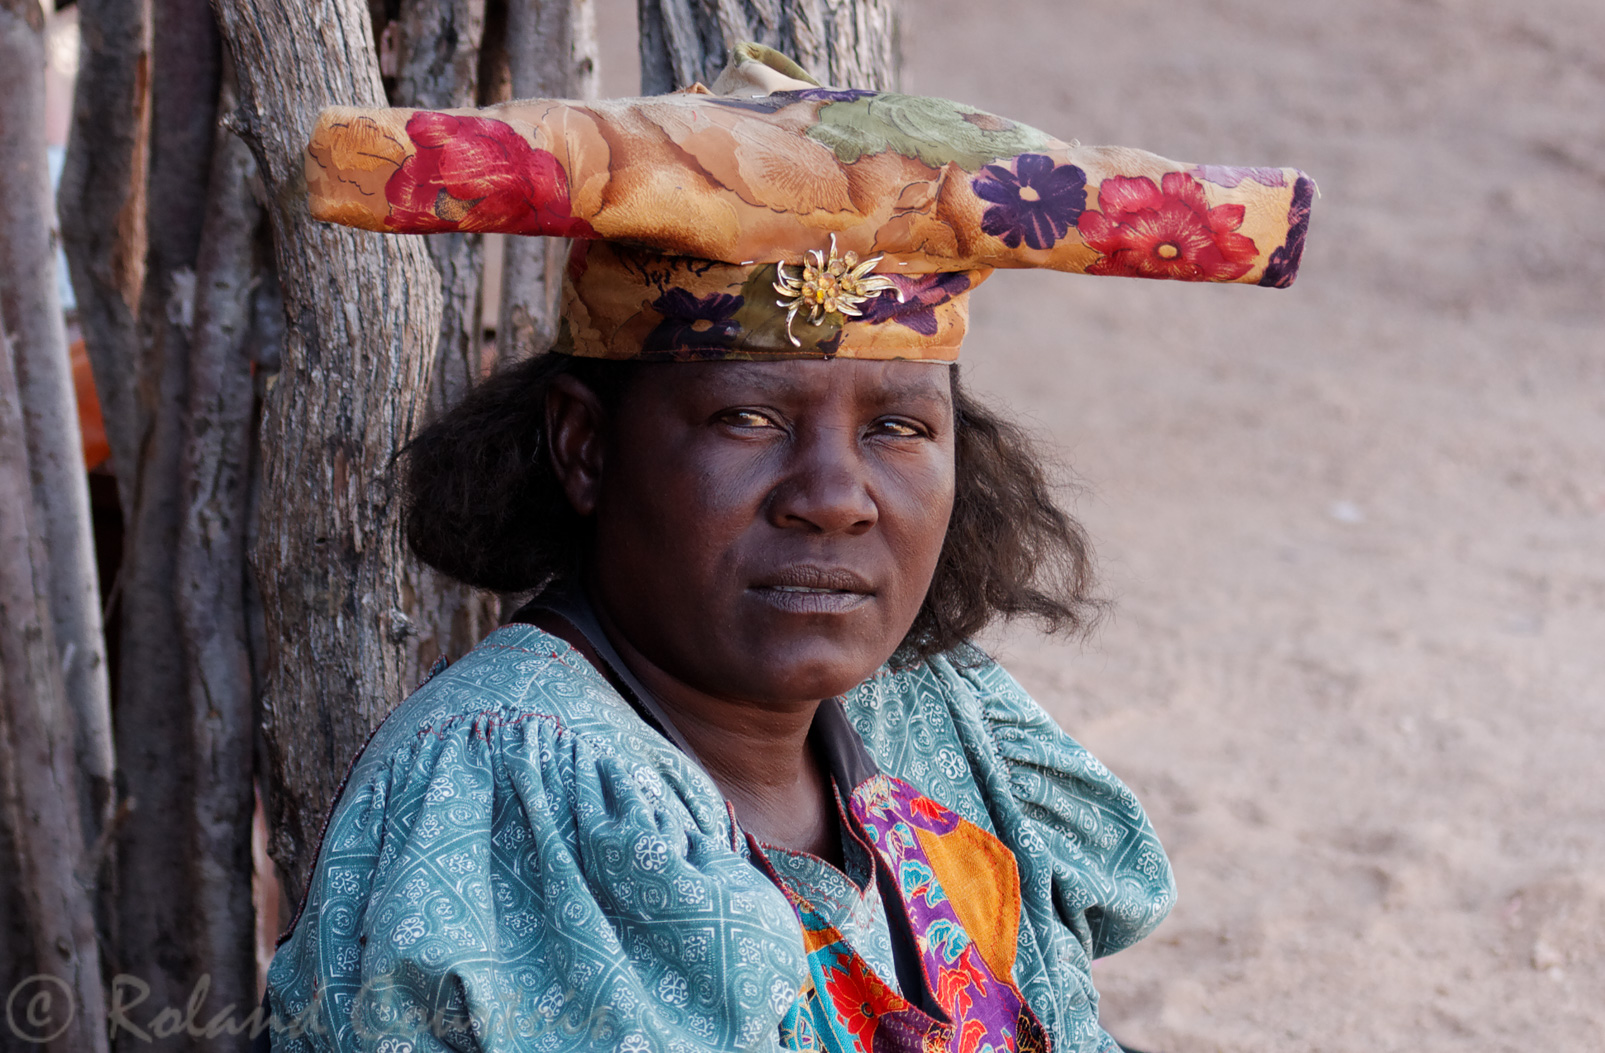 Femme de l'ethnie herero, avec sa coiffe caractéristique.